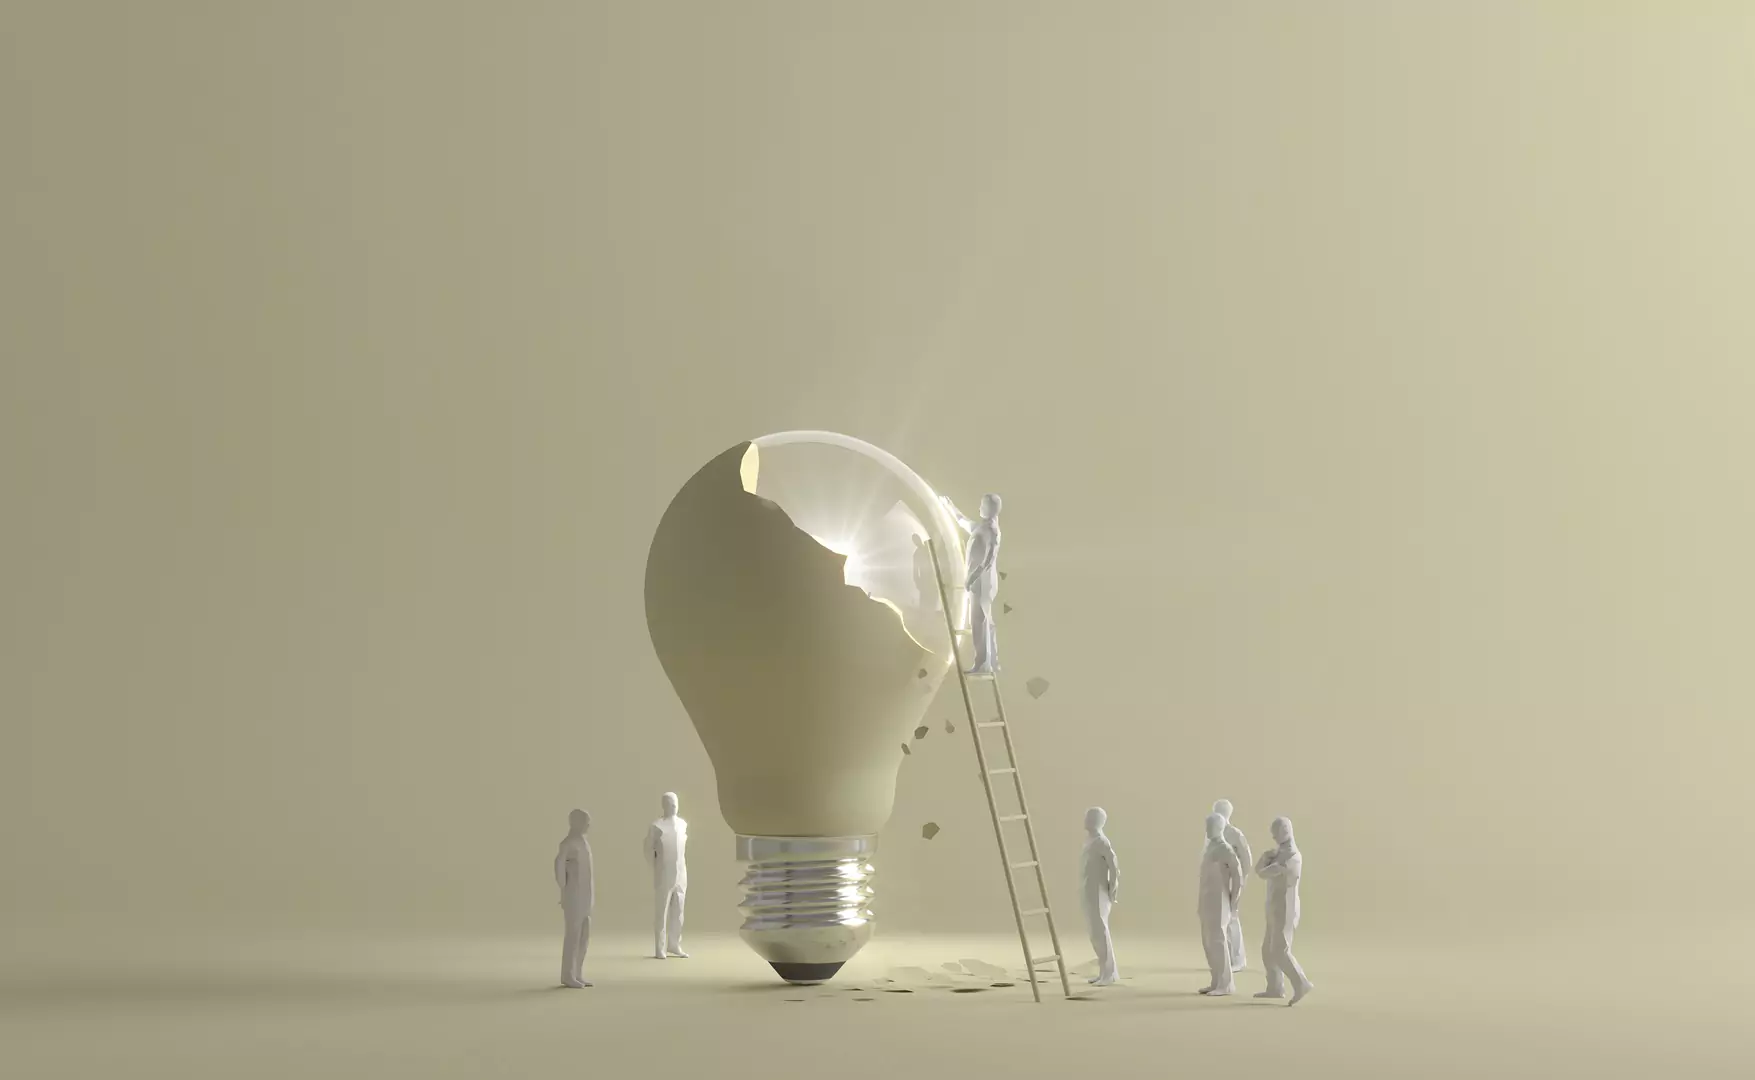 بازآفرینی, ایده, نوآوری, کسب و کار